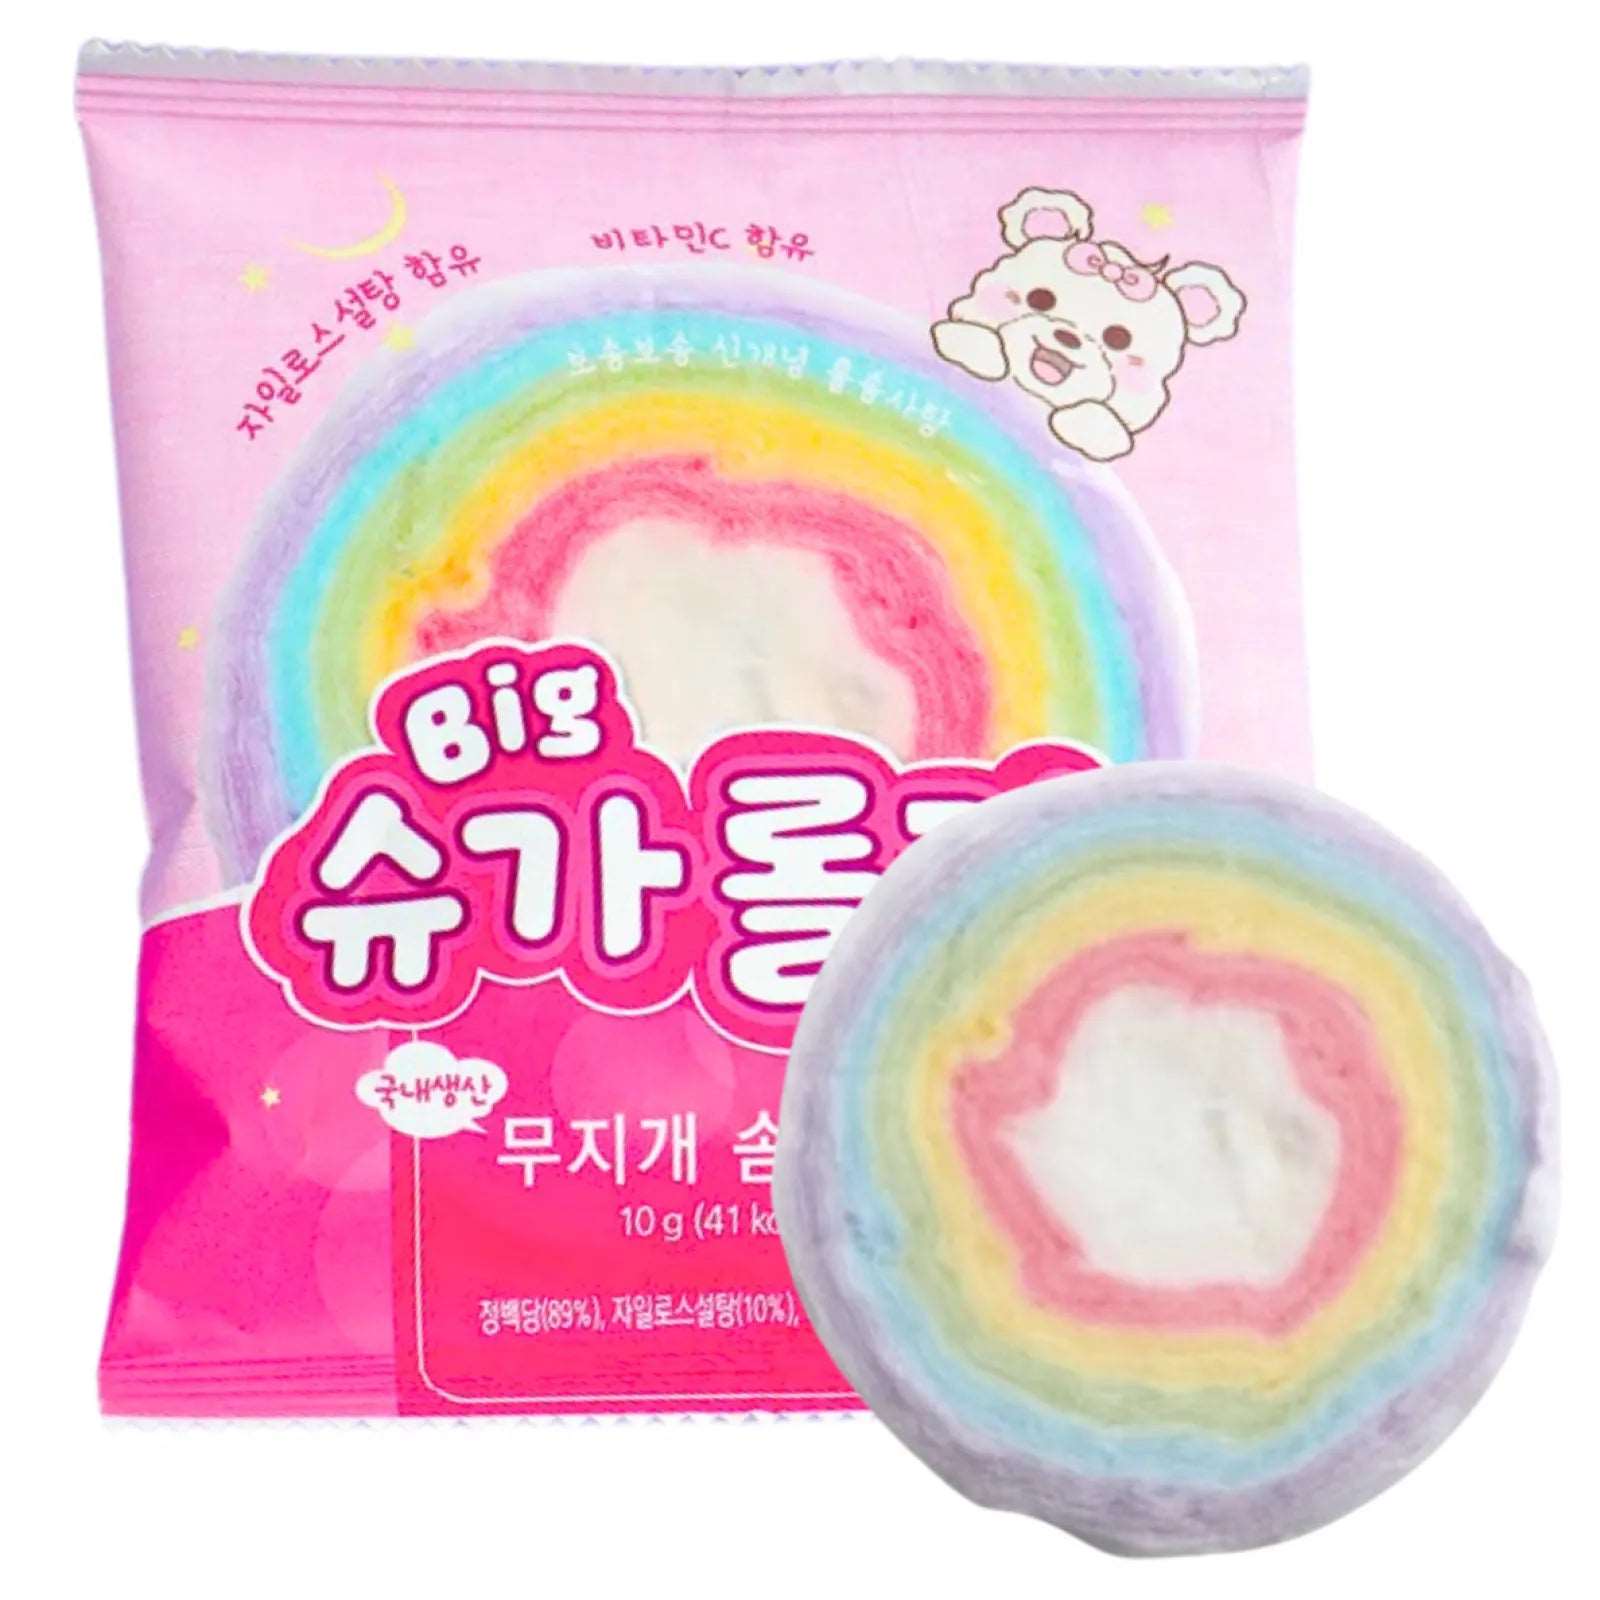 YESUNG F&B Big Sugar Rolly Cotton Candy GATSU GATSU